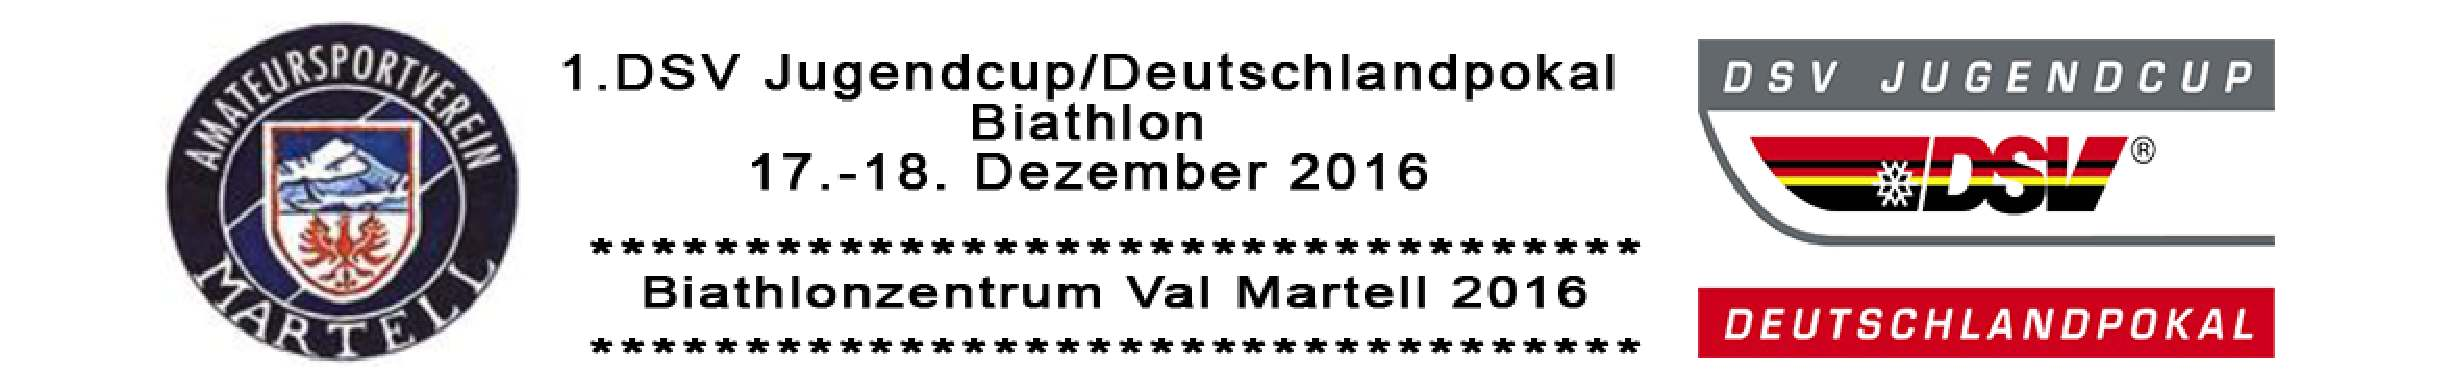 Biathlonzentrum Martell Deutscher Skiverband 1.DSV Jugendcup/Deutschlandpokal Biathlonzentrum Val Martell 17.12.